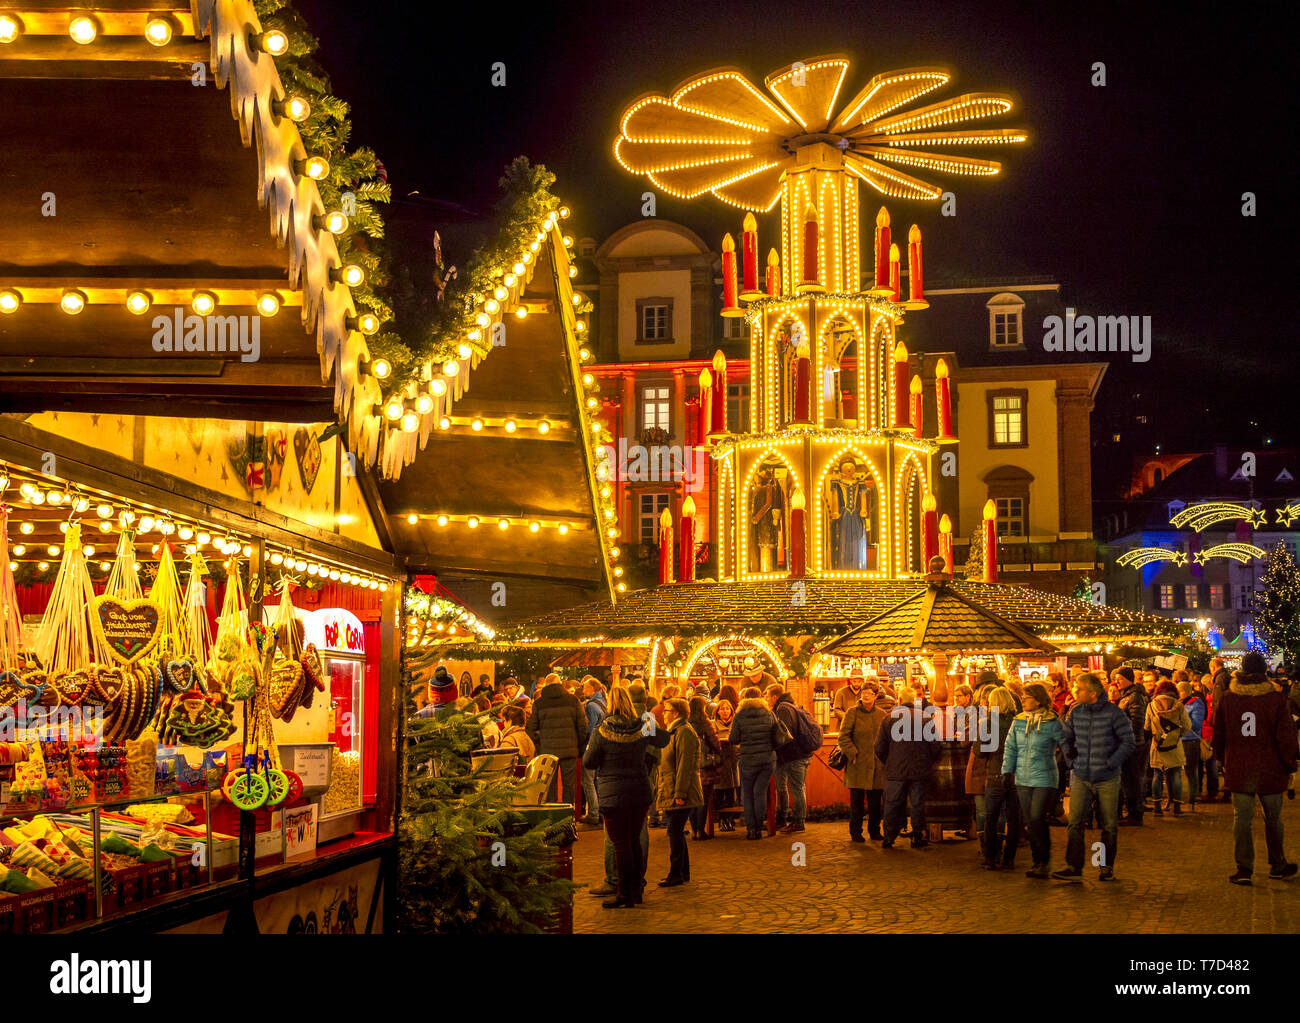 Mercatino di Natale presso la piazza del mercato di Heidelberg, Germania Foto Stock